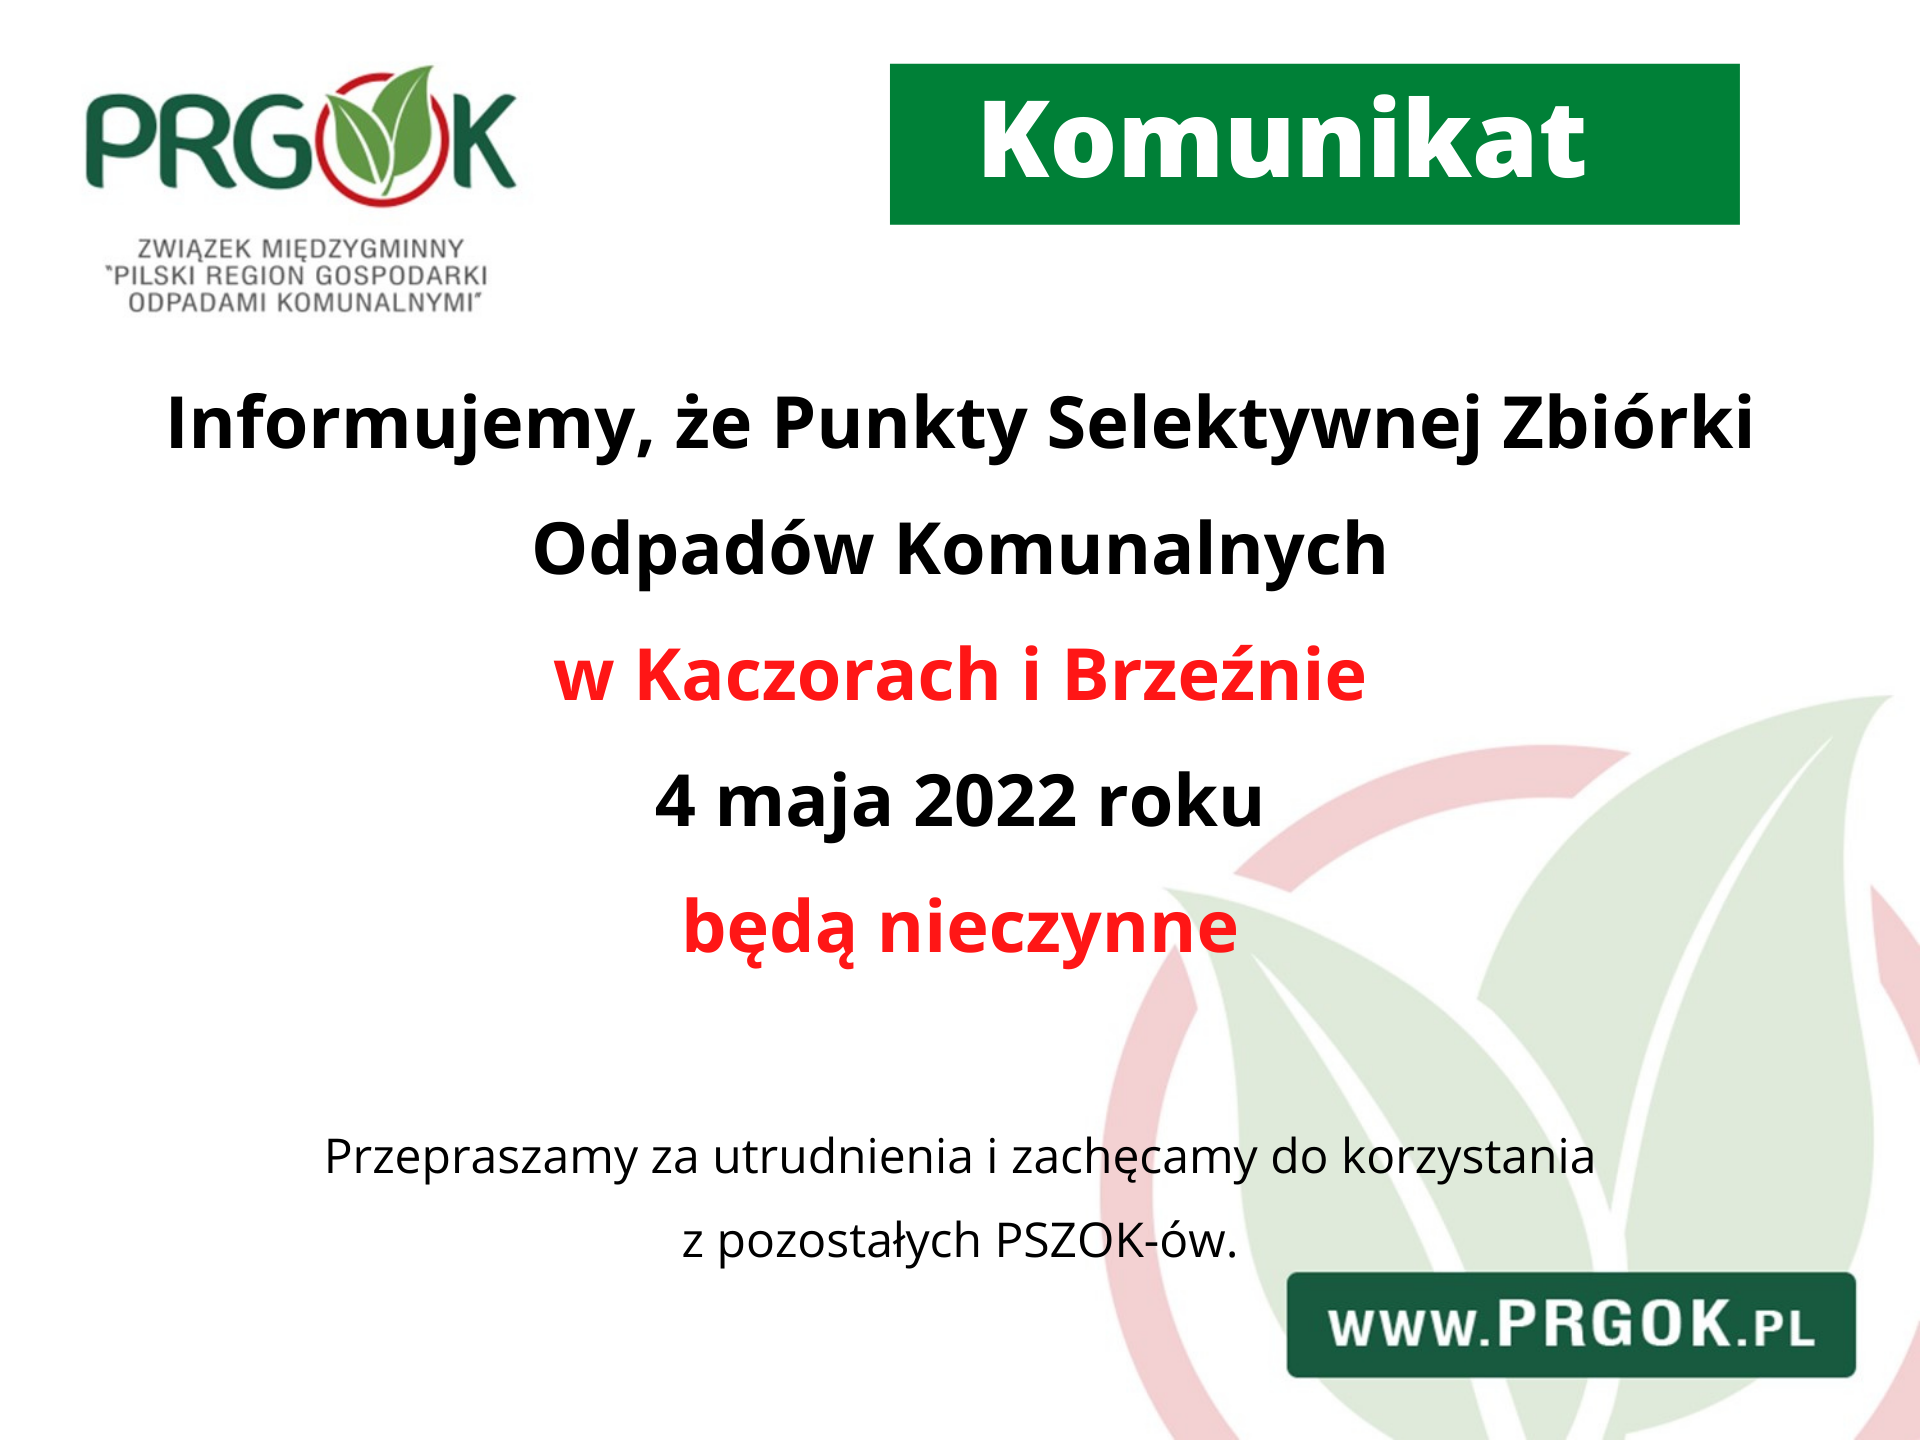 Plakat informacyjny o treści: Informujemy, że Punkty Selektywnej Zbiórki Odpadów Komunalnych w Kaczorach i Brzeźnie 4 maja 2022 roku będą nieczynne.